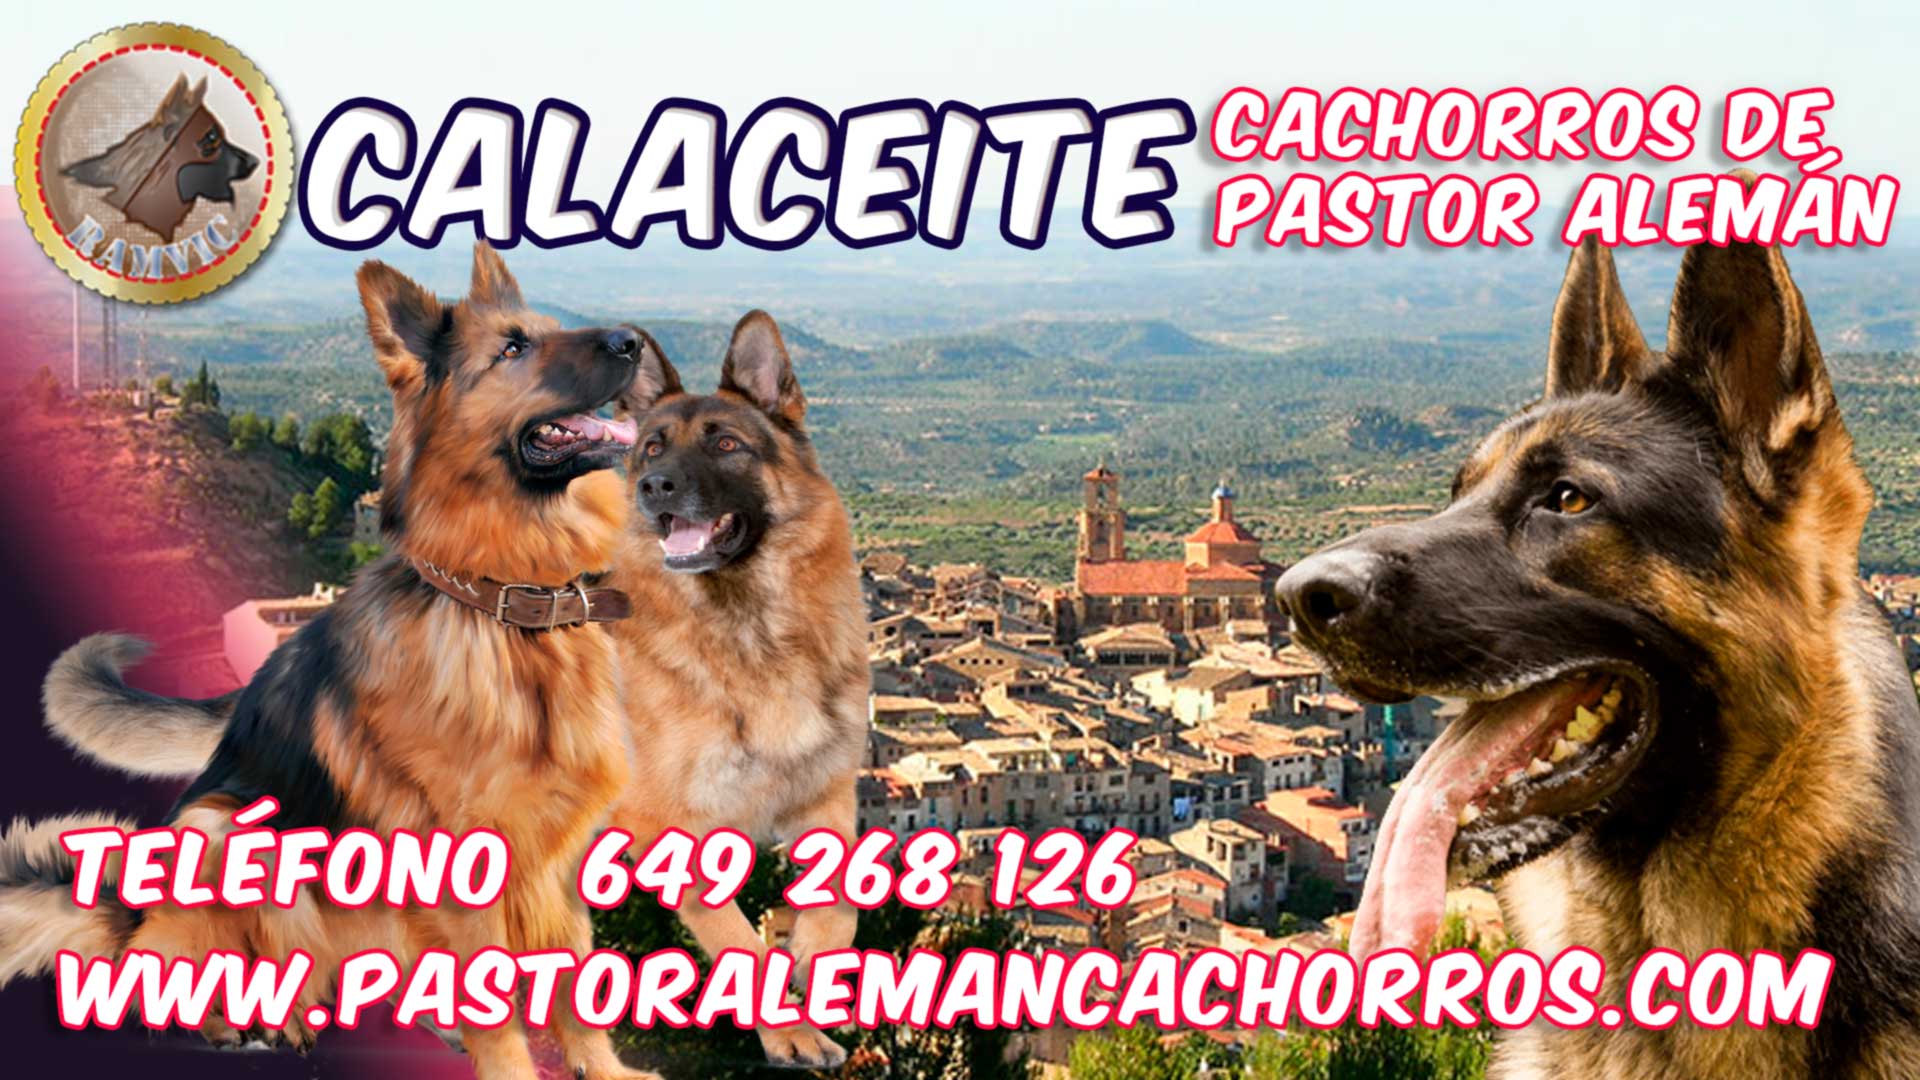 Cachorros de Pastor Alemán en Calaceite